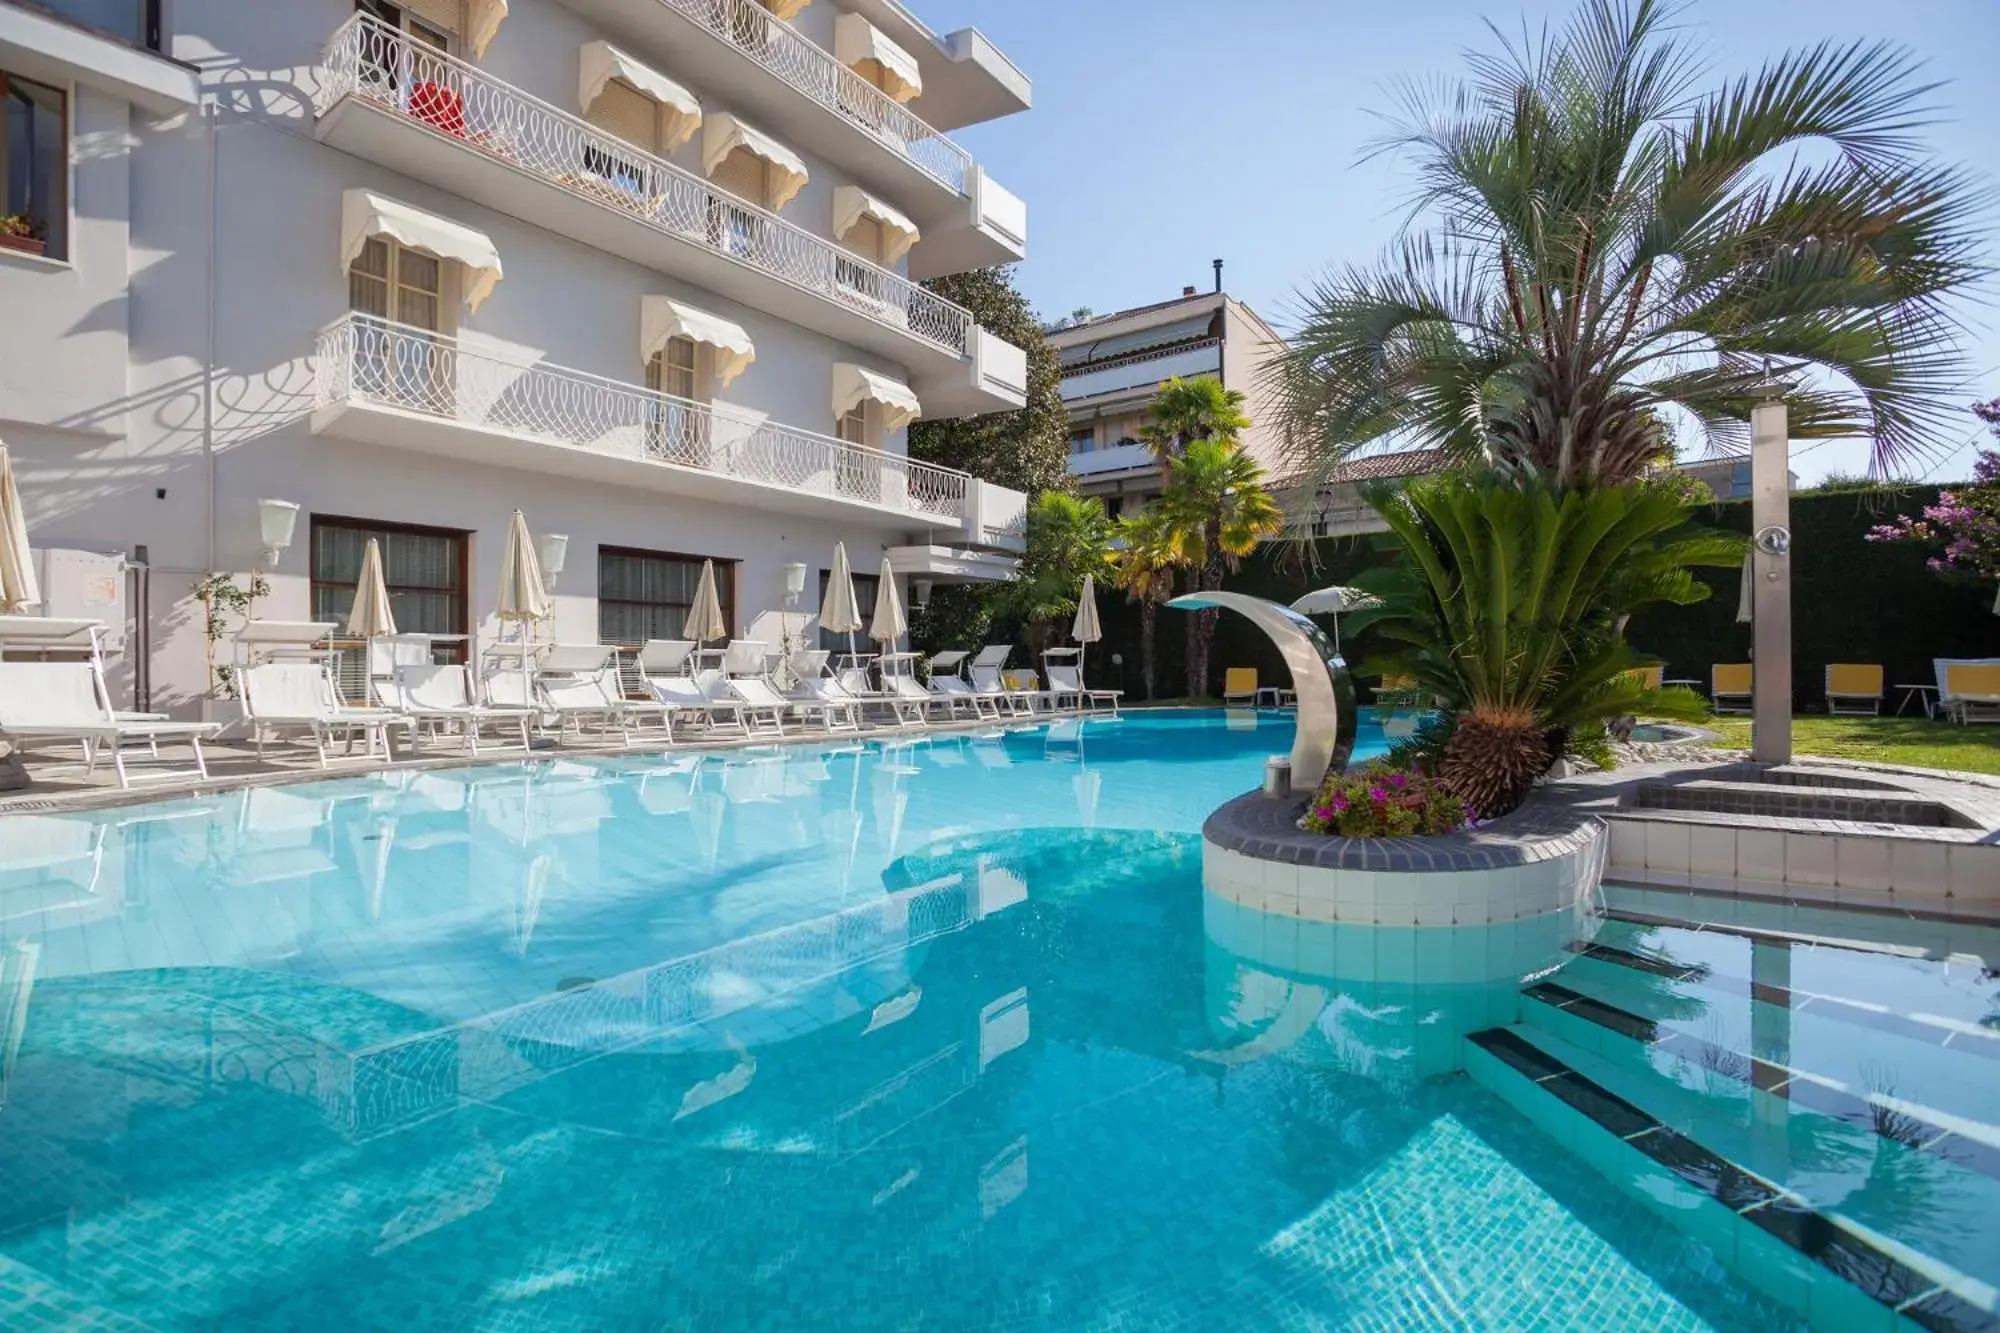 Swimming Pool in Hotel Terme Salus